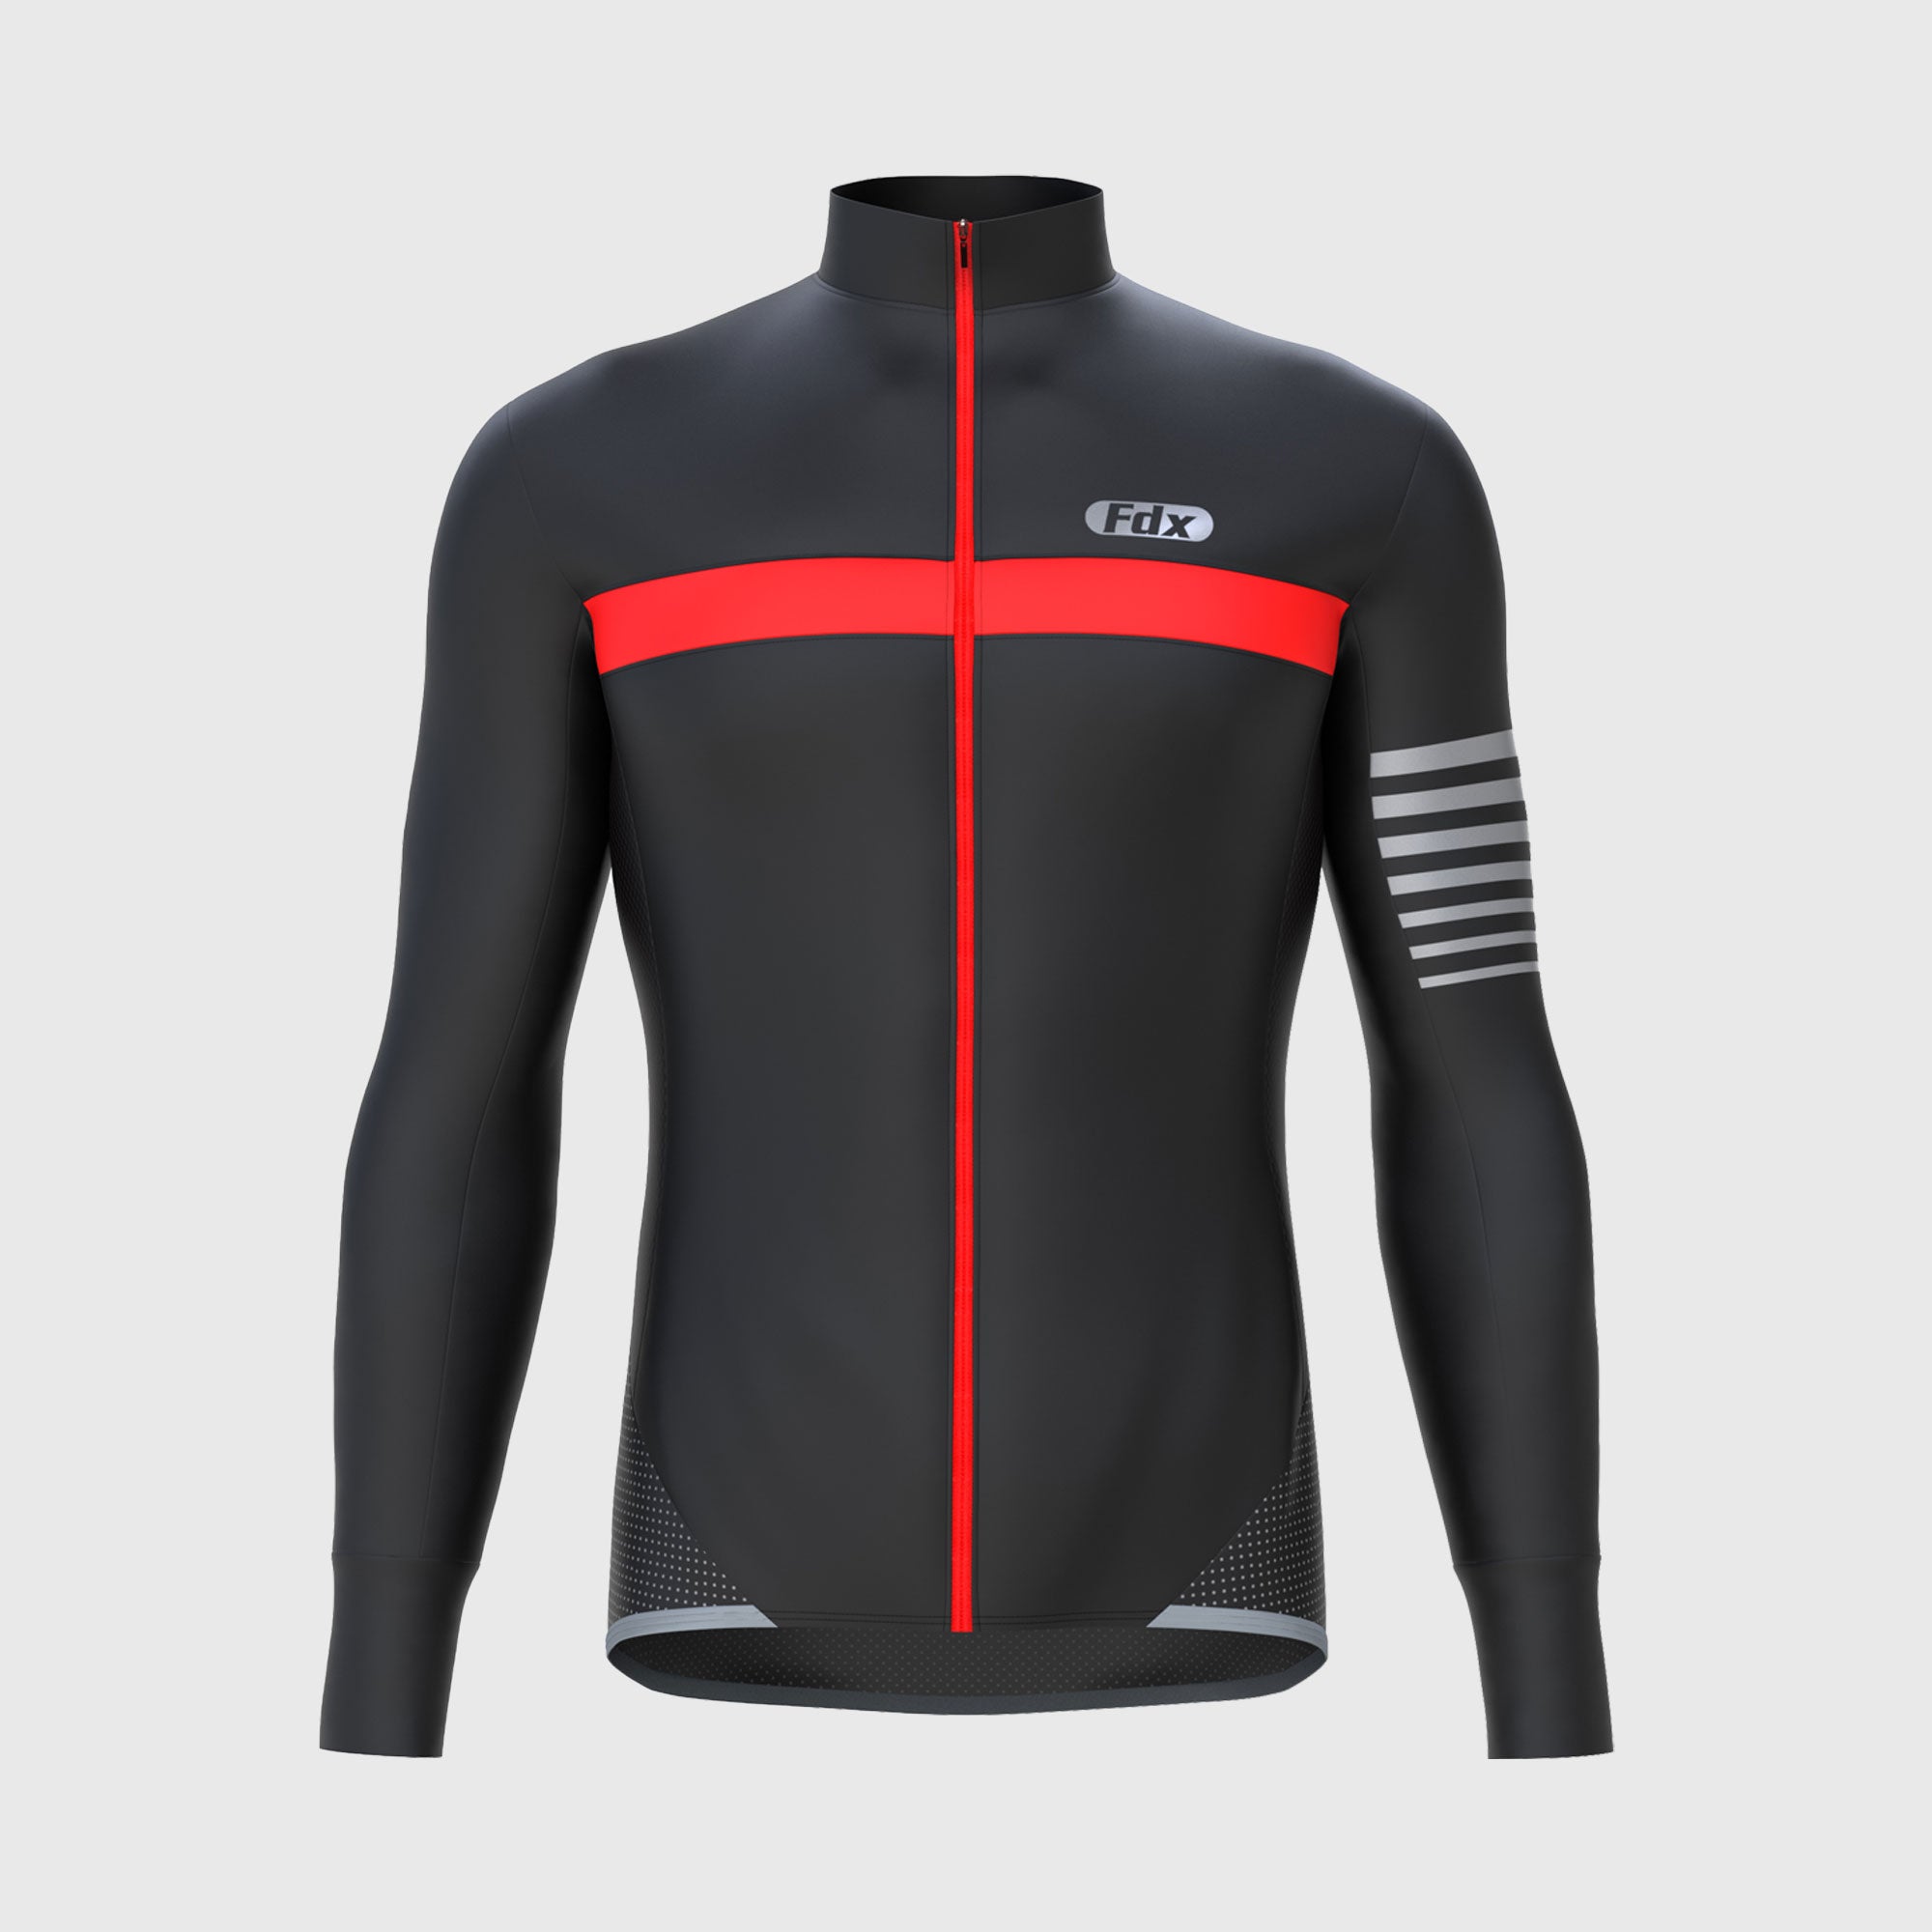 Fdx Men's Red & Black Best Long Sleeve Cycling Jersey for Winter Roubaix Thermal Fleece Road Bike Wear Top Full Zipper, Pockets & Hi viz Reflectors - All Day